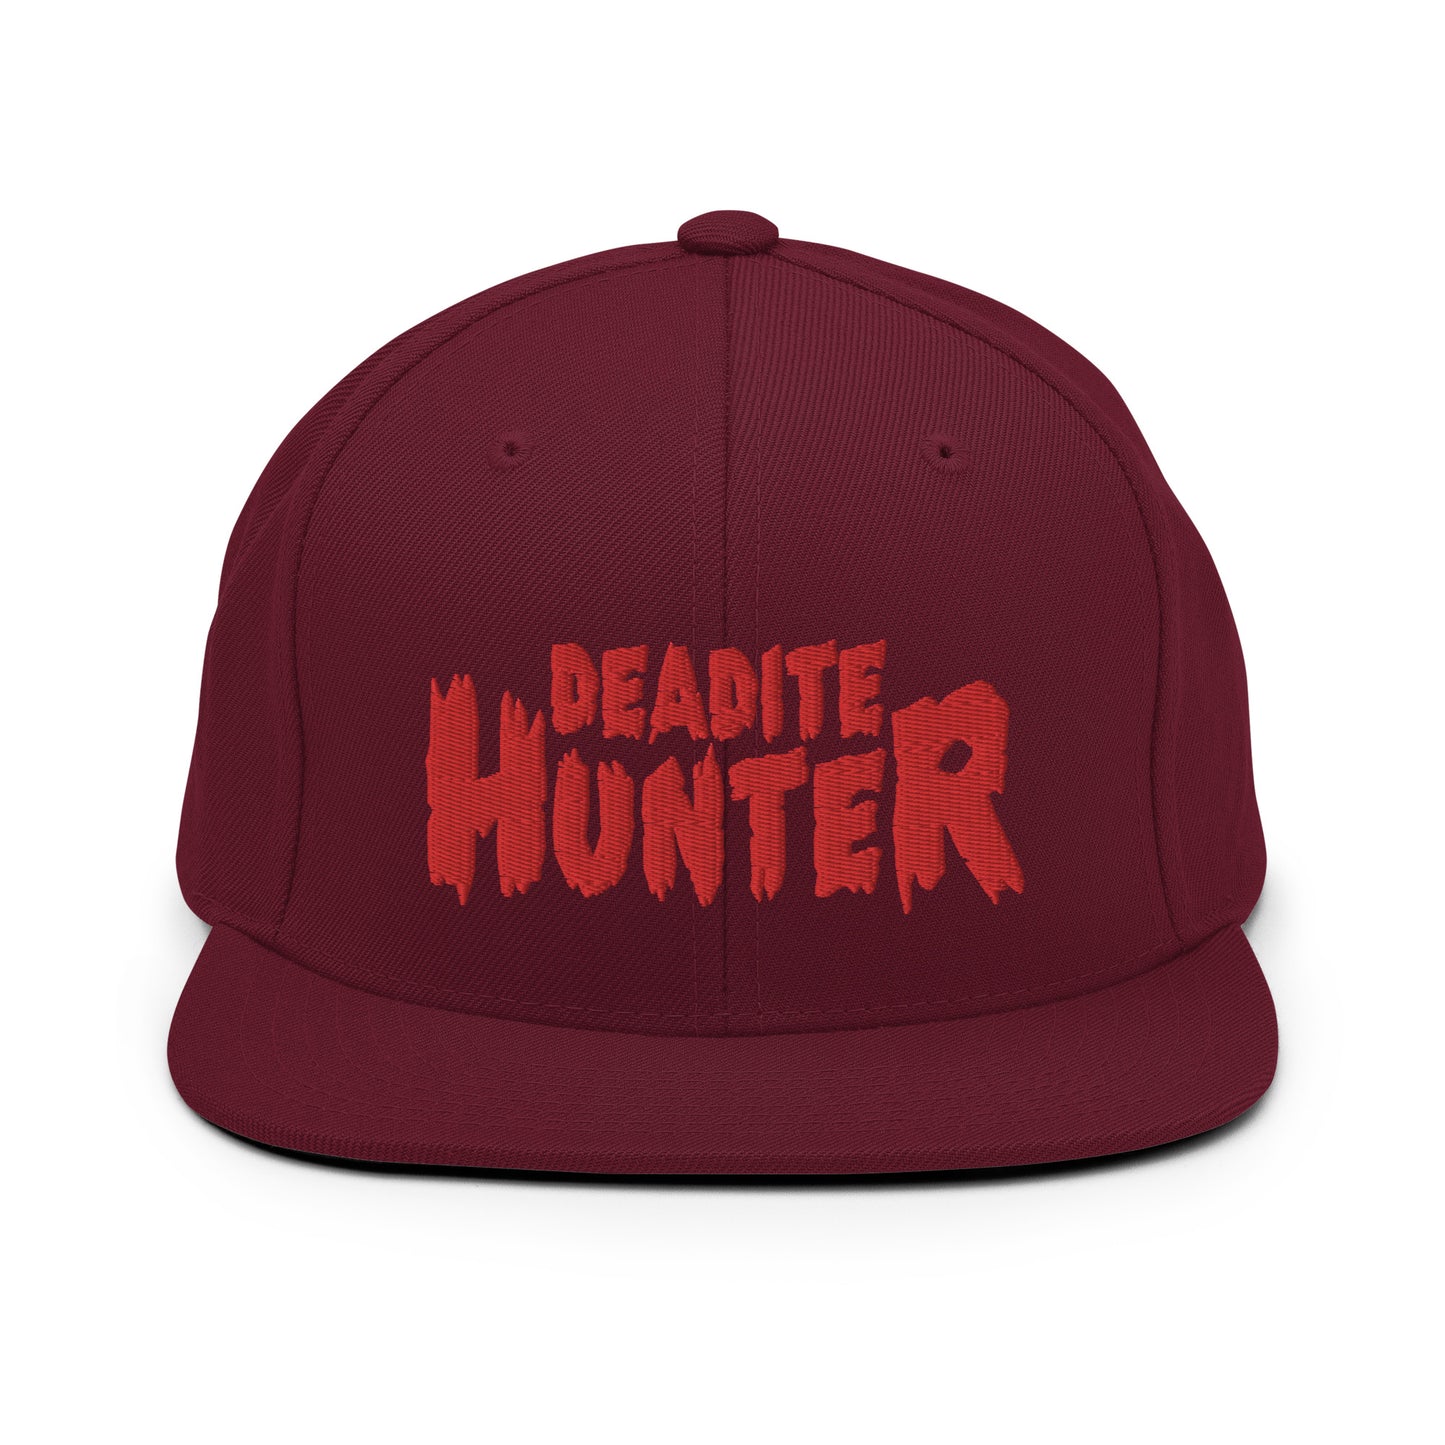 Deadite Hunter snapback hat